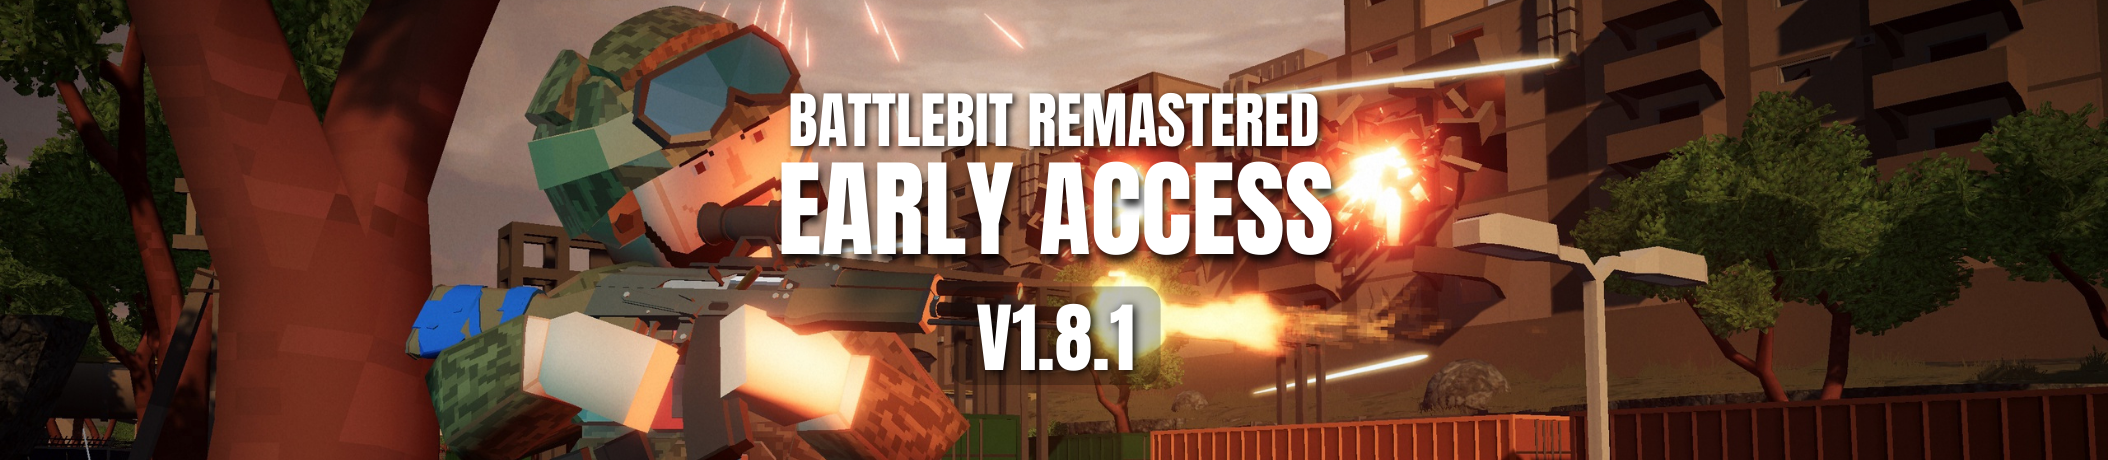 BattleBit Remastered 2.0.0 Patch Notes - Battlebit Remastered